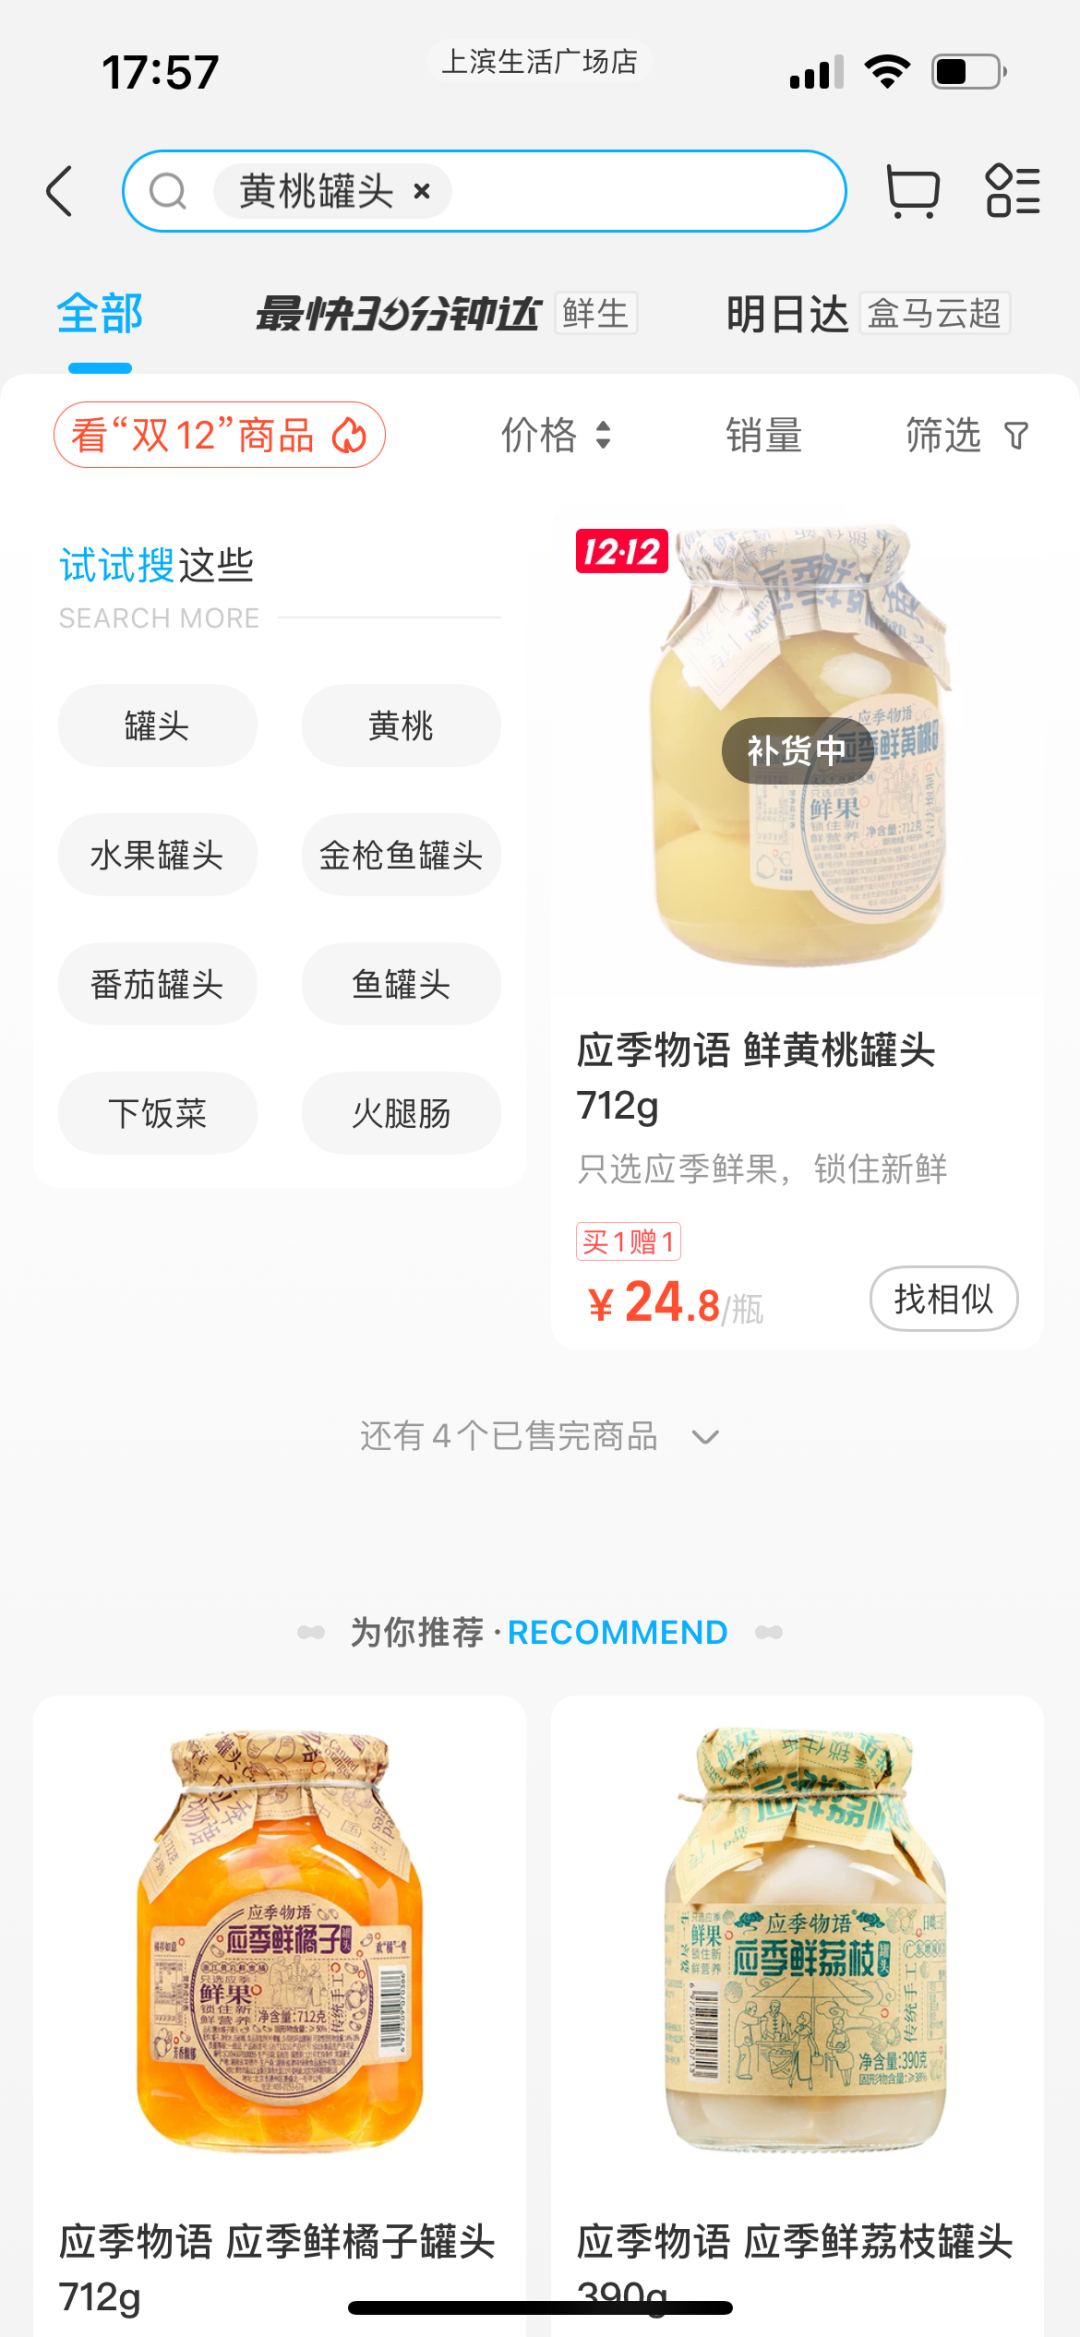 盒马App搜索“黄桃罐头”，显示“补货中”